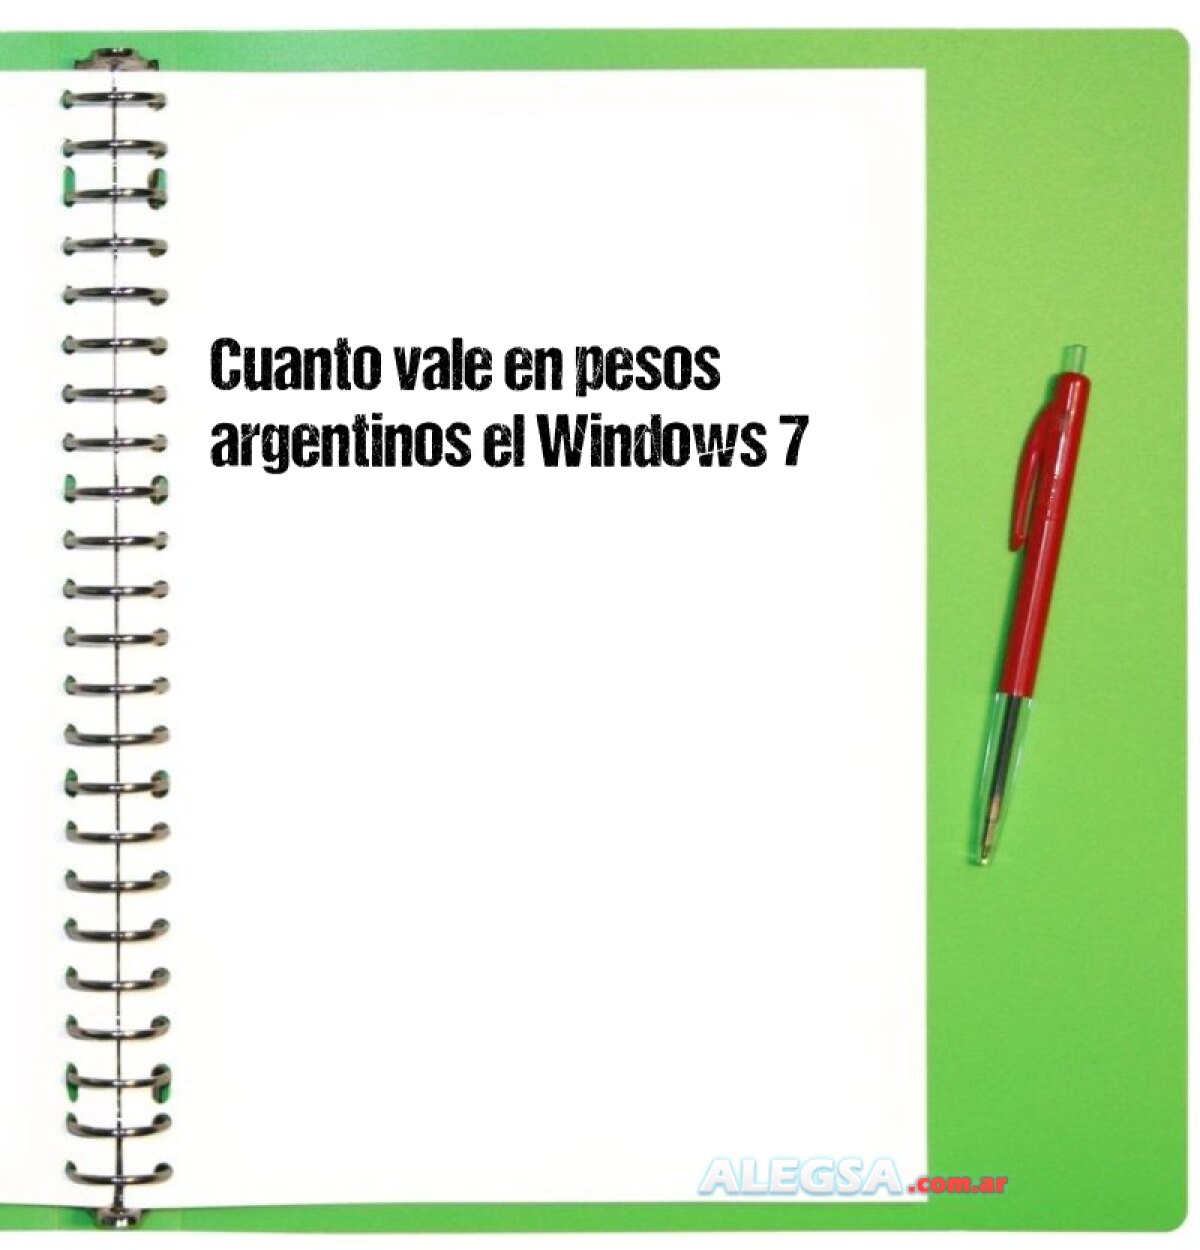 Cuanto vale en pesos argentinos el Windows 7